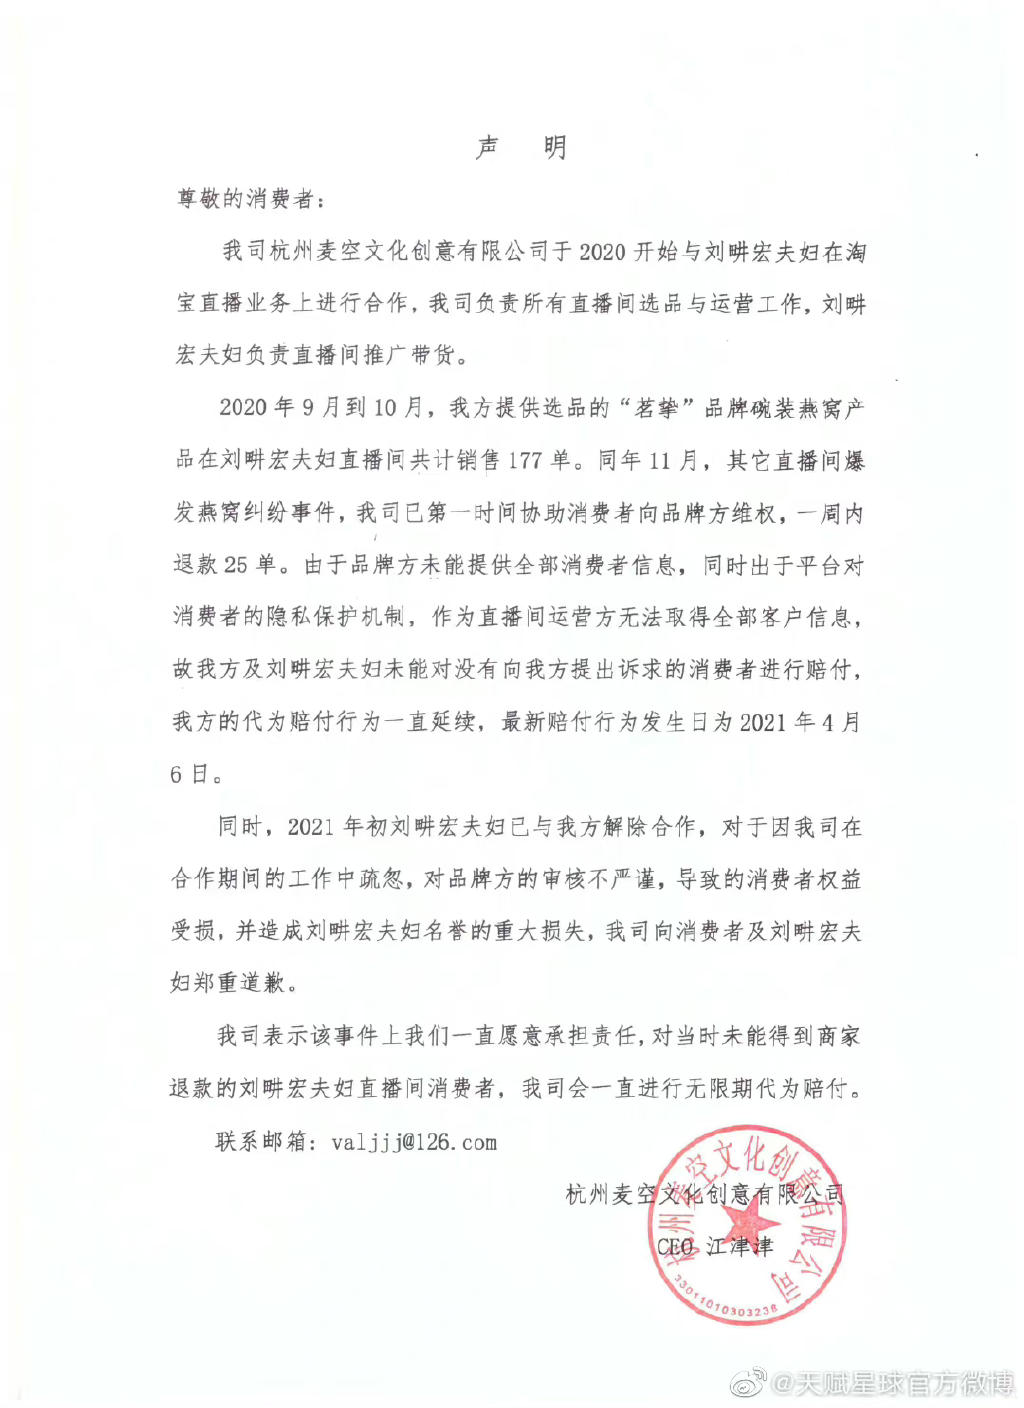 杭州麦空公司发布声明。